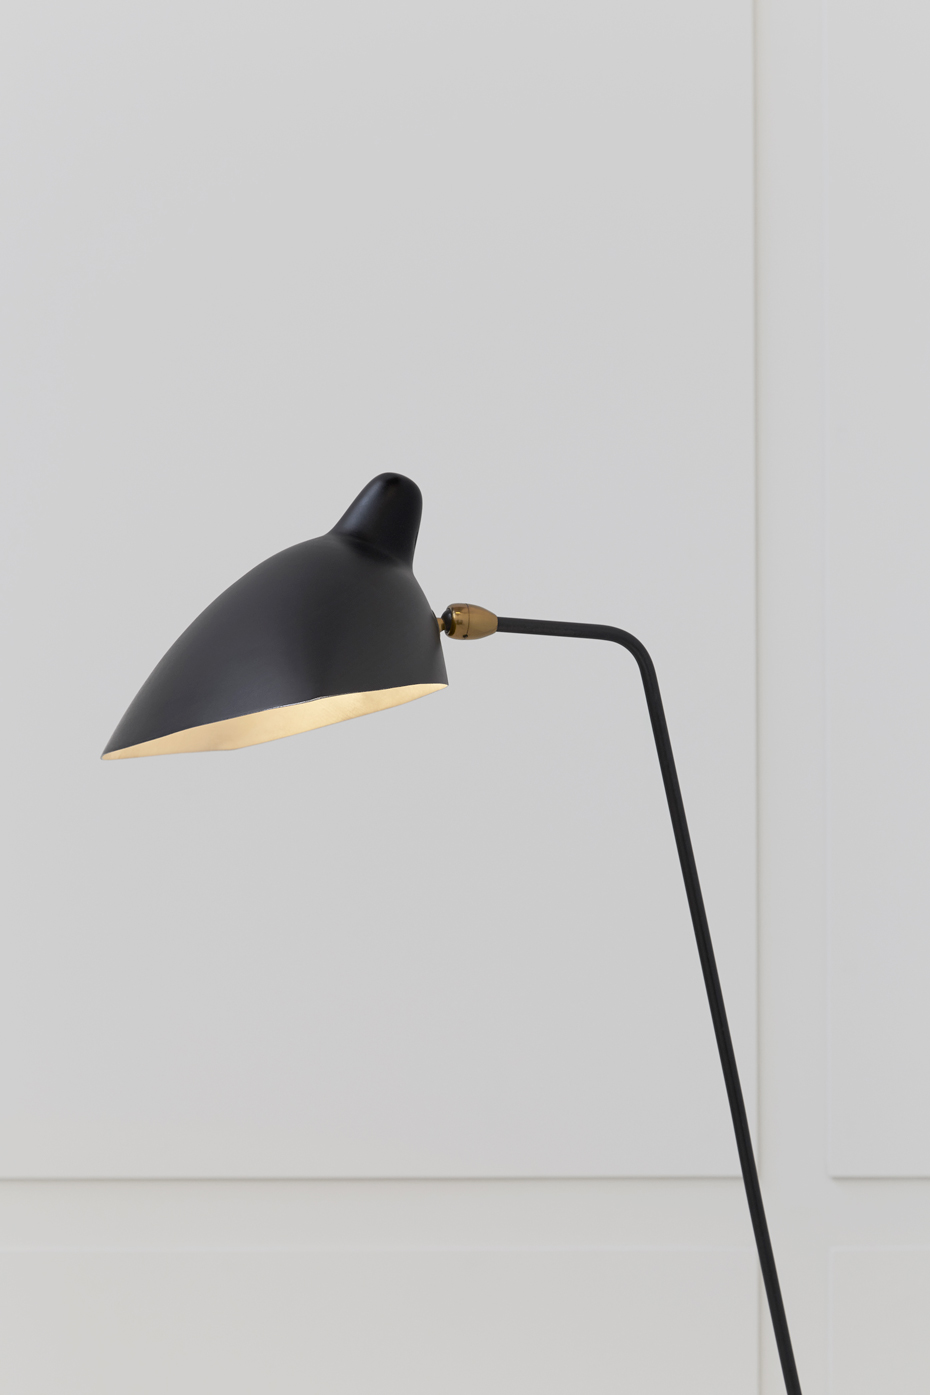 Serge Mouille, Simple floor lamp, vue 03